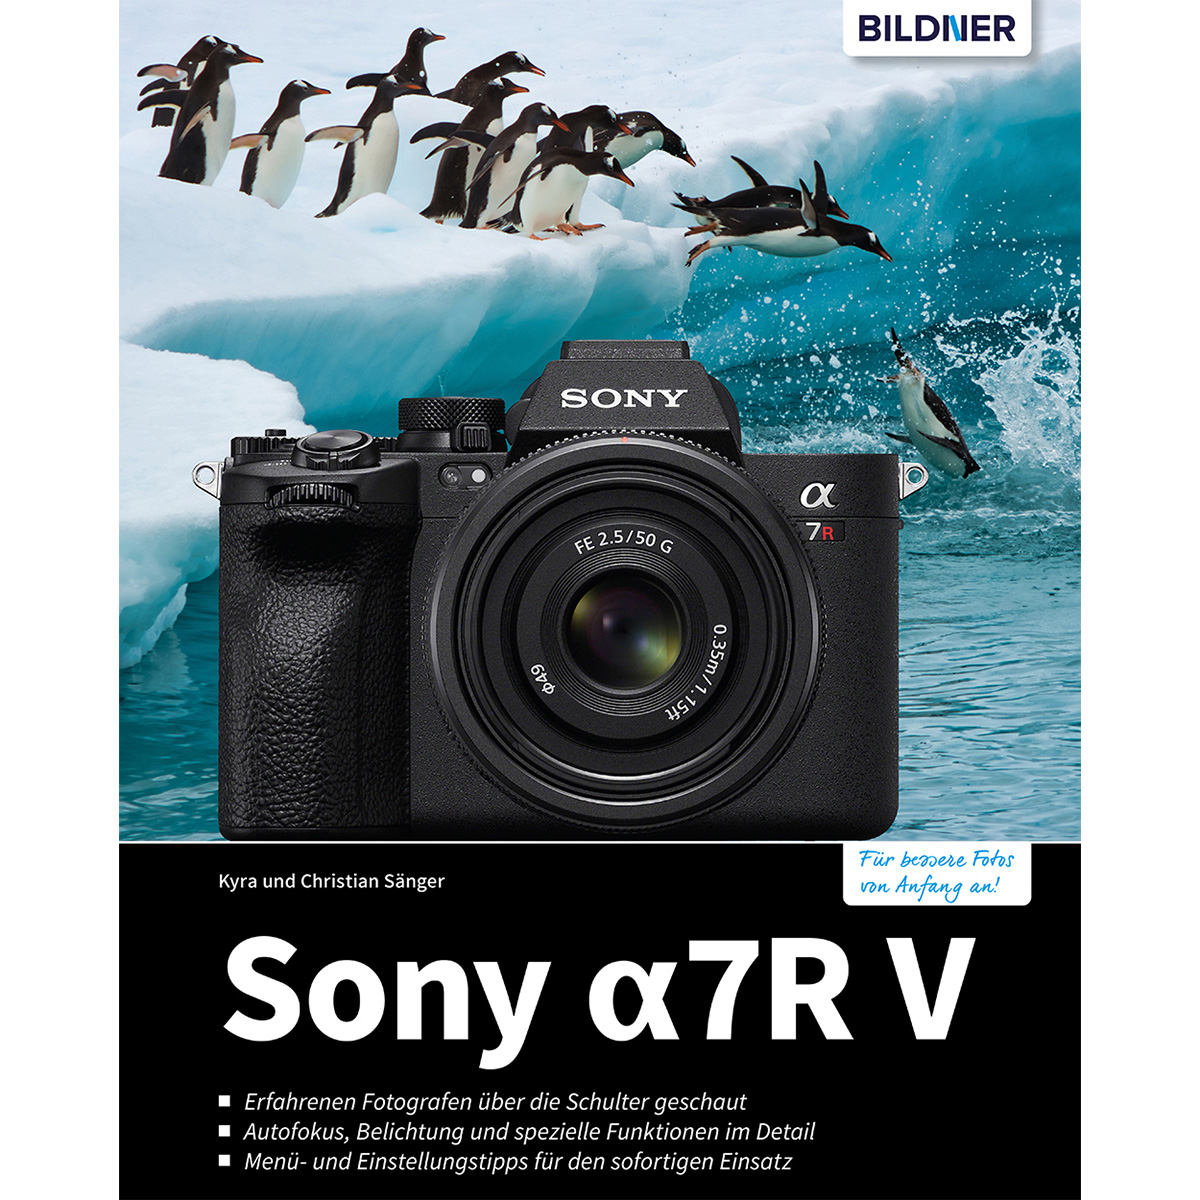 Sony alpha 7R V - Kamera zu Das Praxisbuch Ihrer umfangreiche